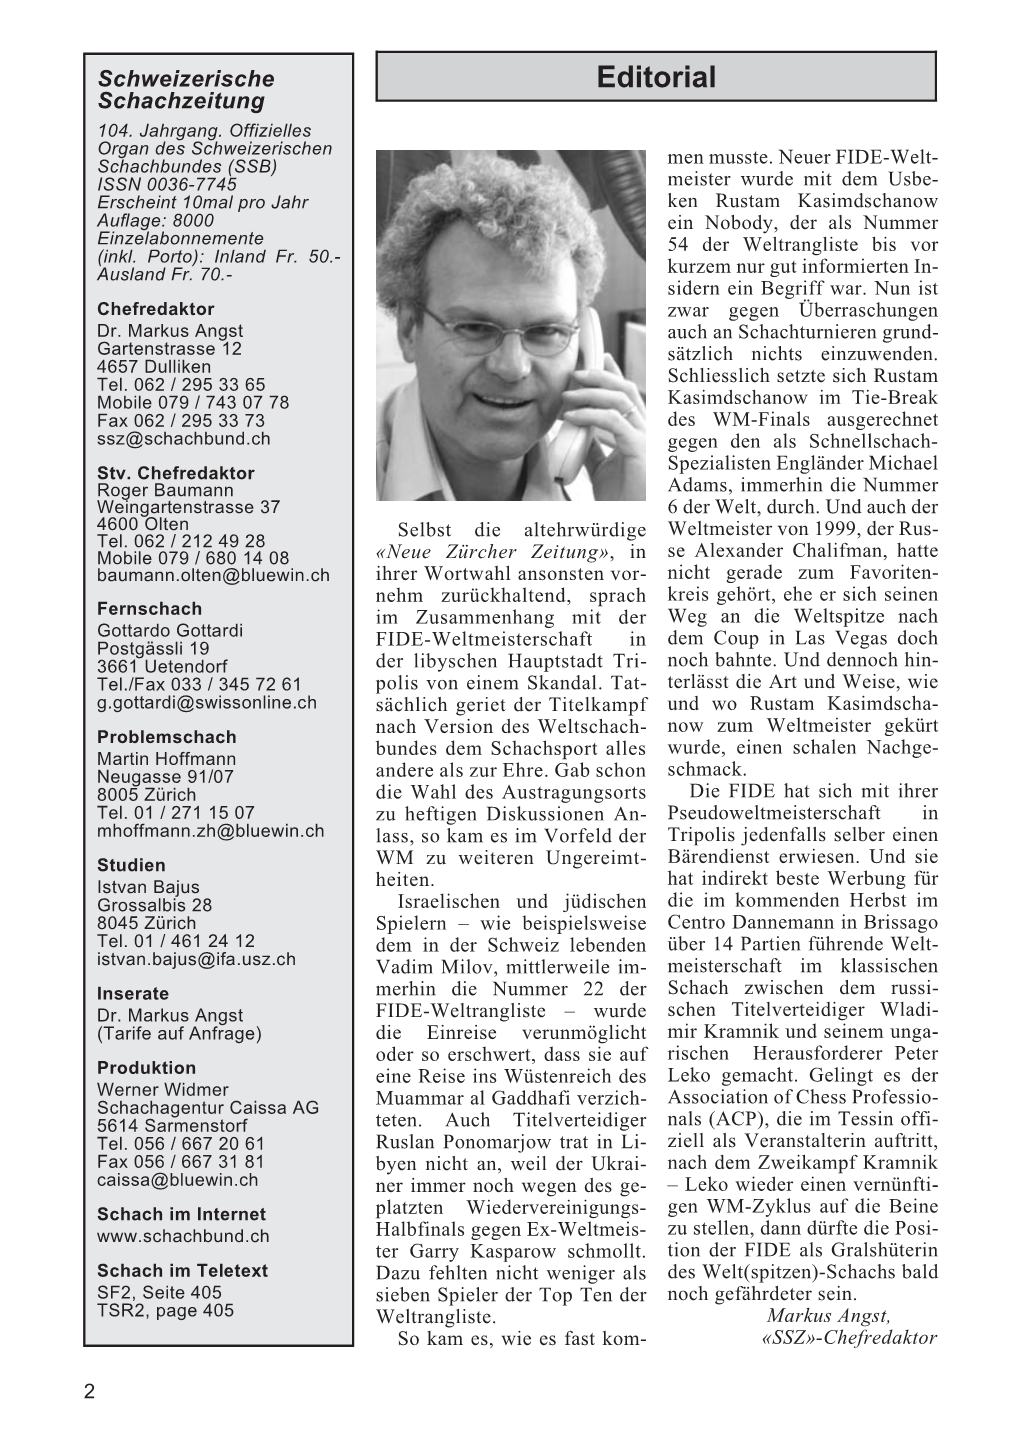 Schweizerische Schachzeitung 2004